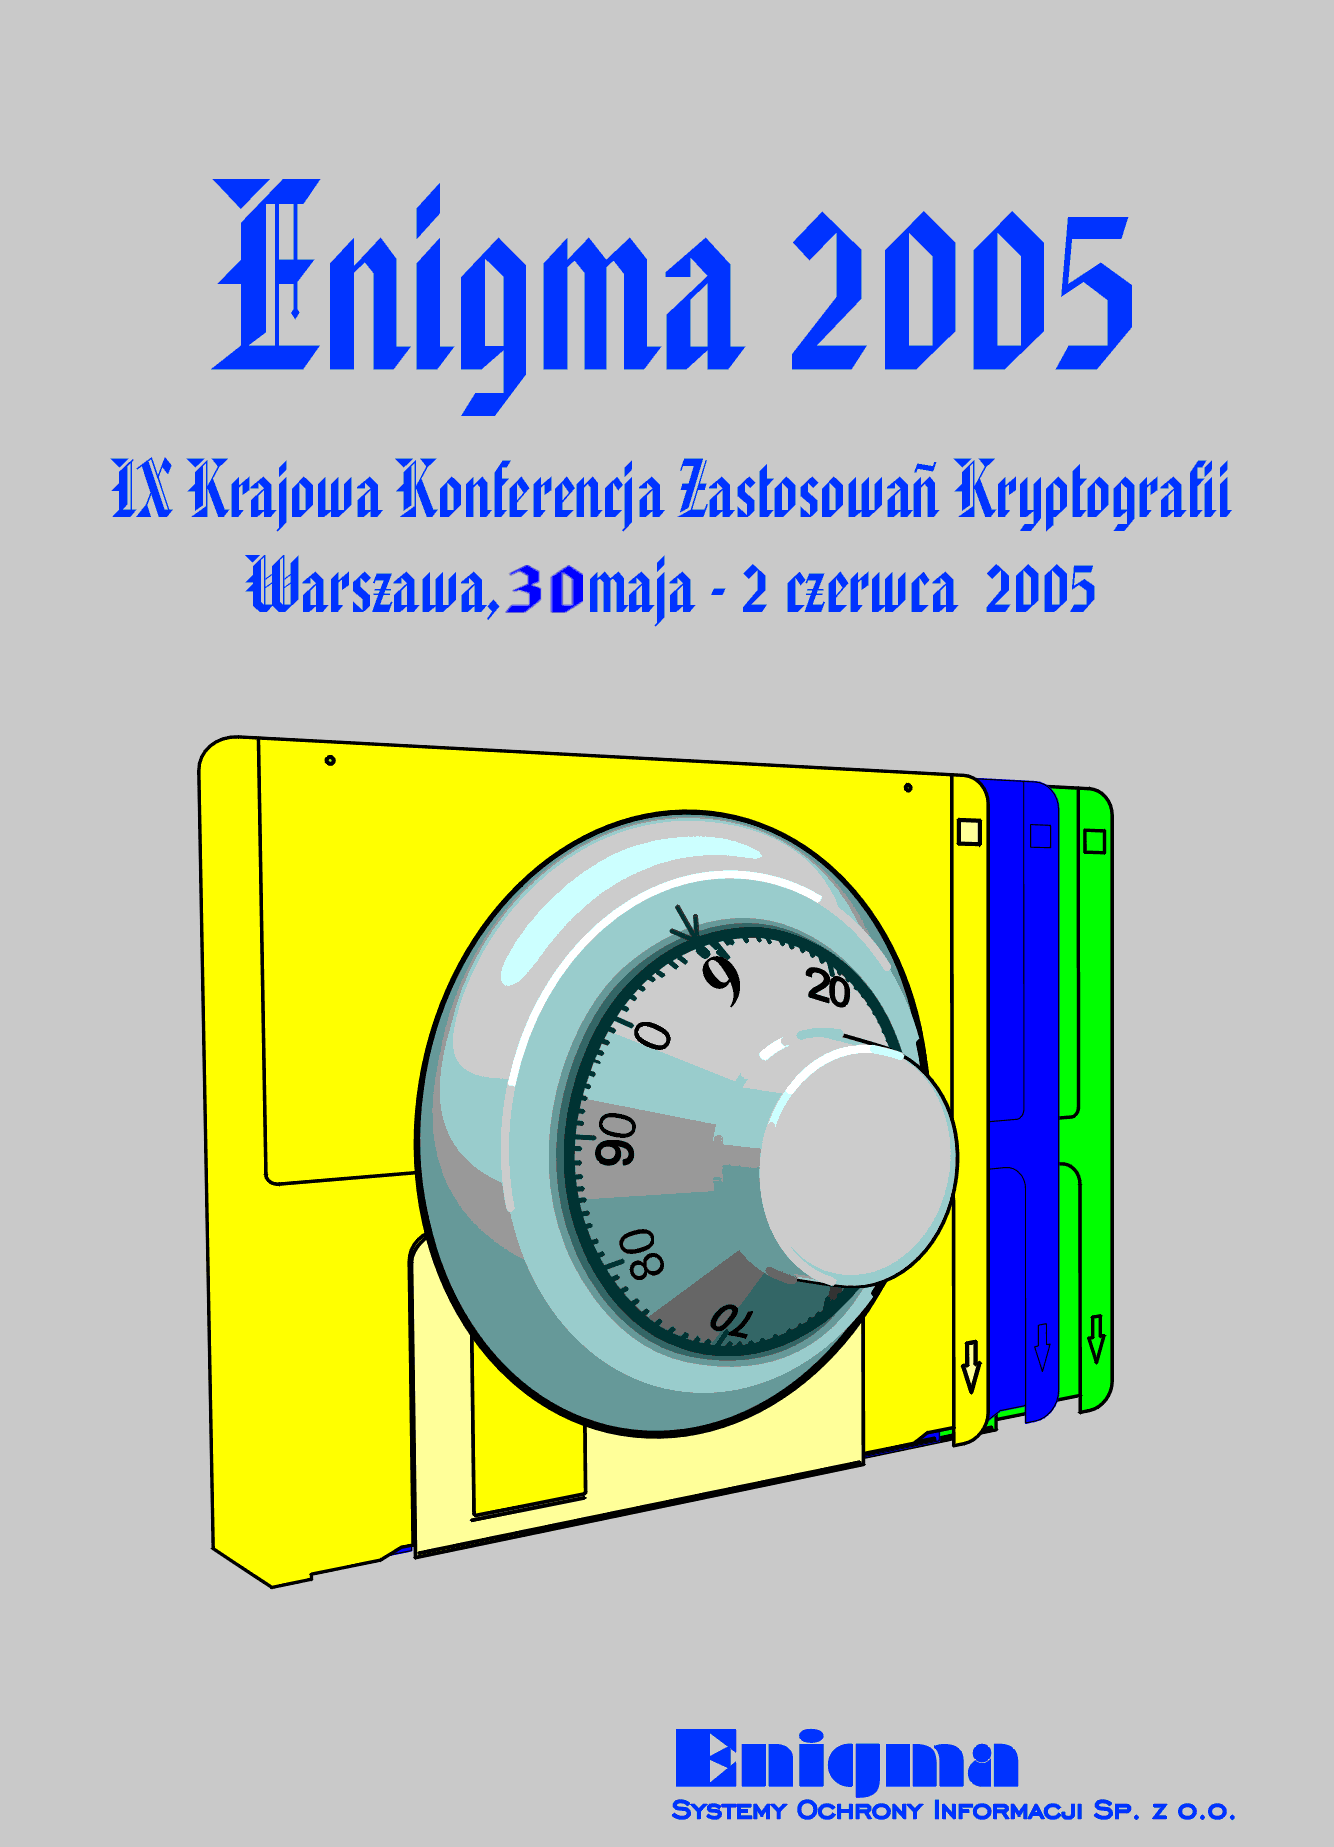 IX Krajowa Konferencja Zastosowa Kryptografii ENIGMA 2005